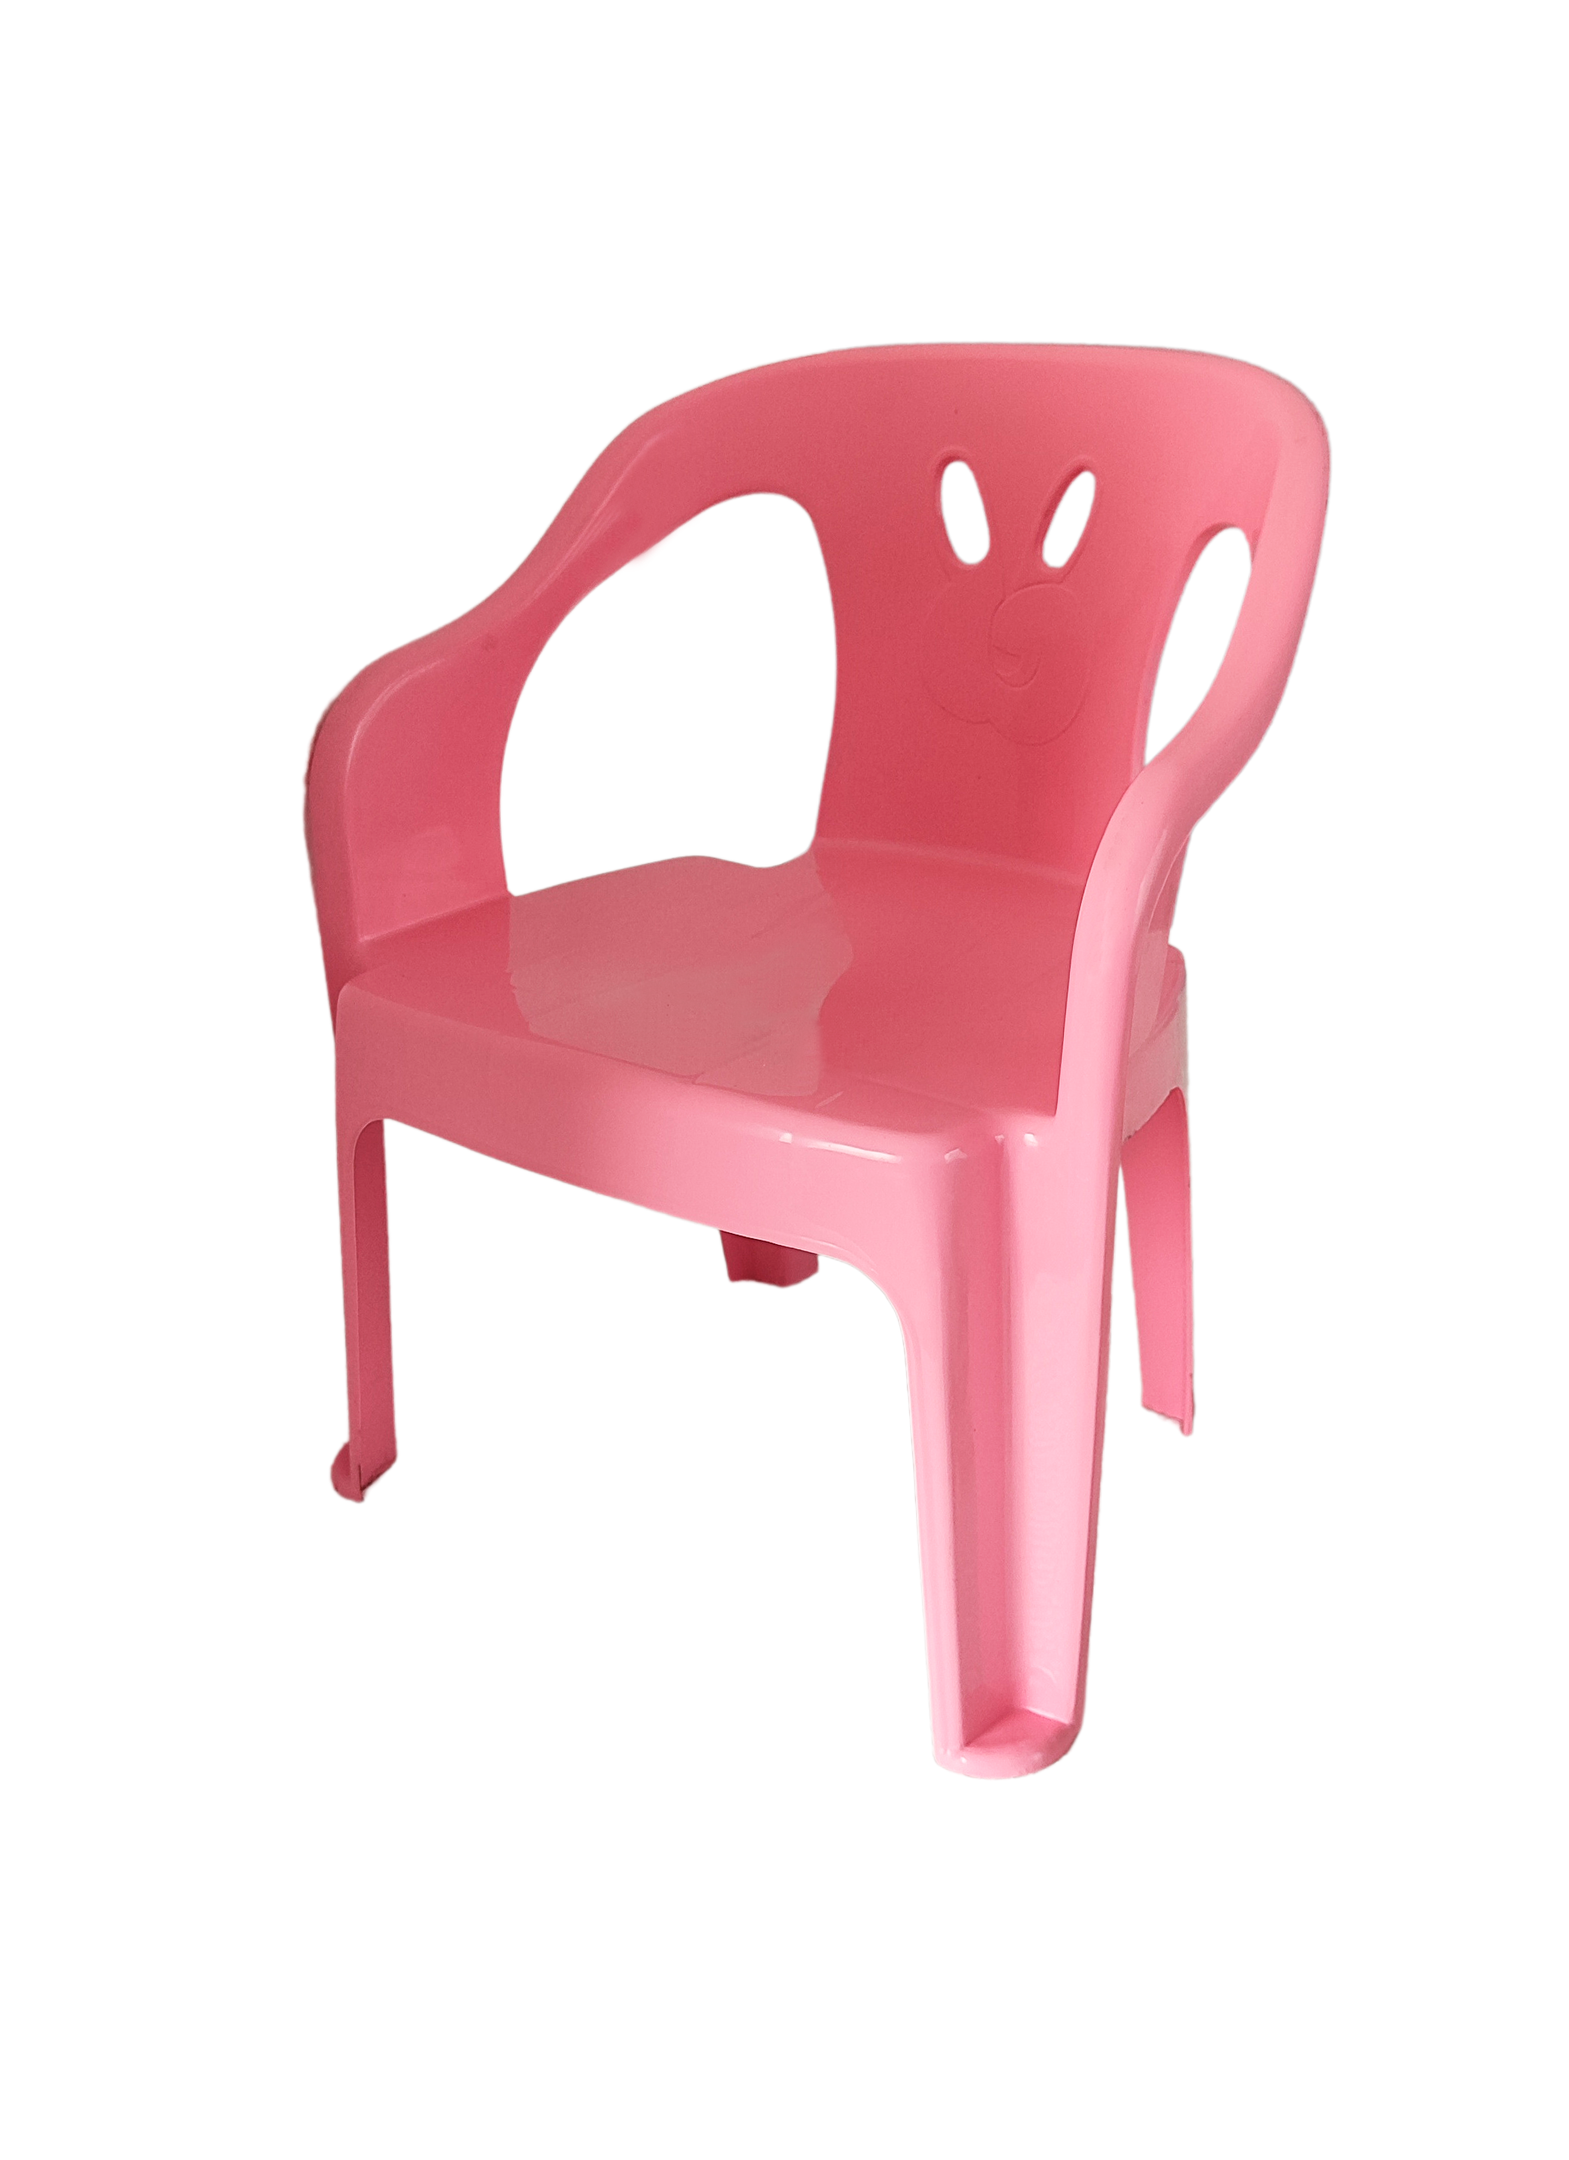 3 Cadeiras Mini Poltrona Infantil de Plástico Rosa e Azul - 3